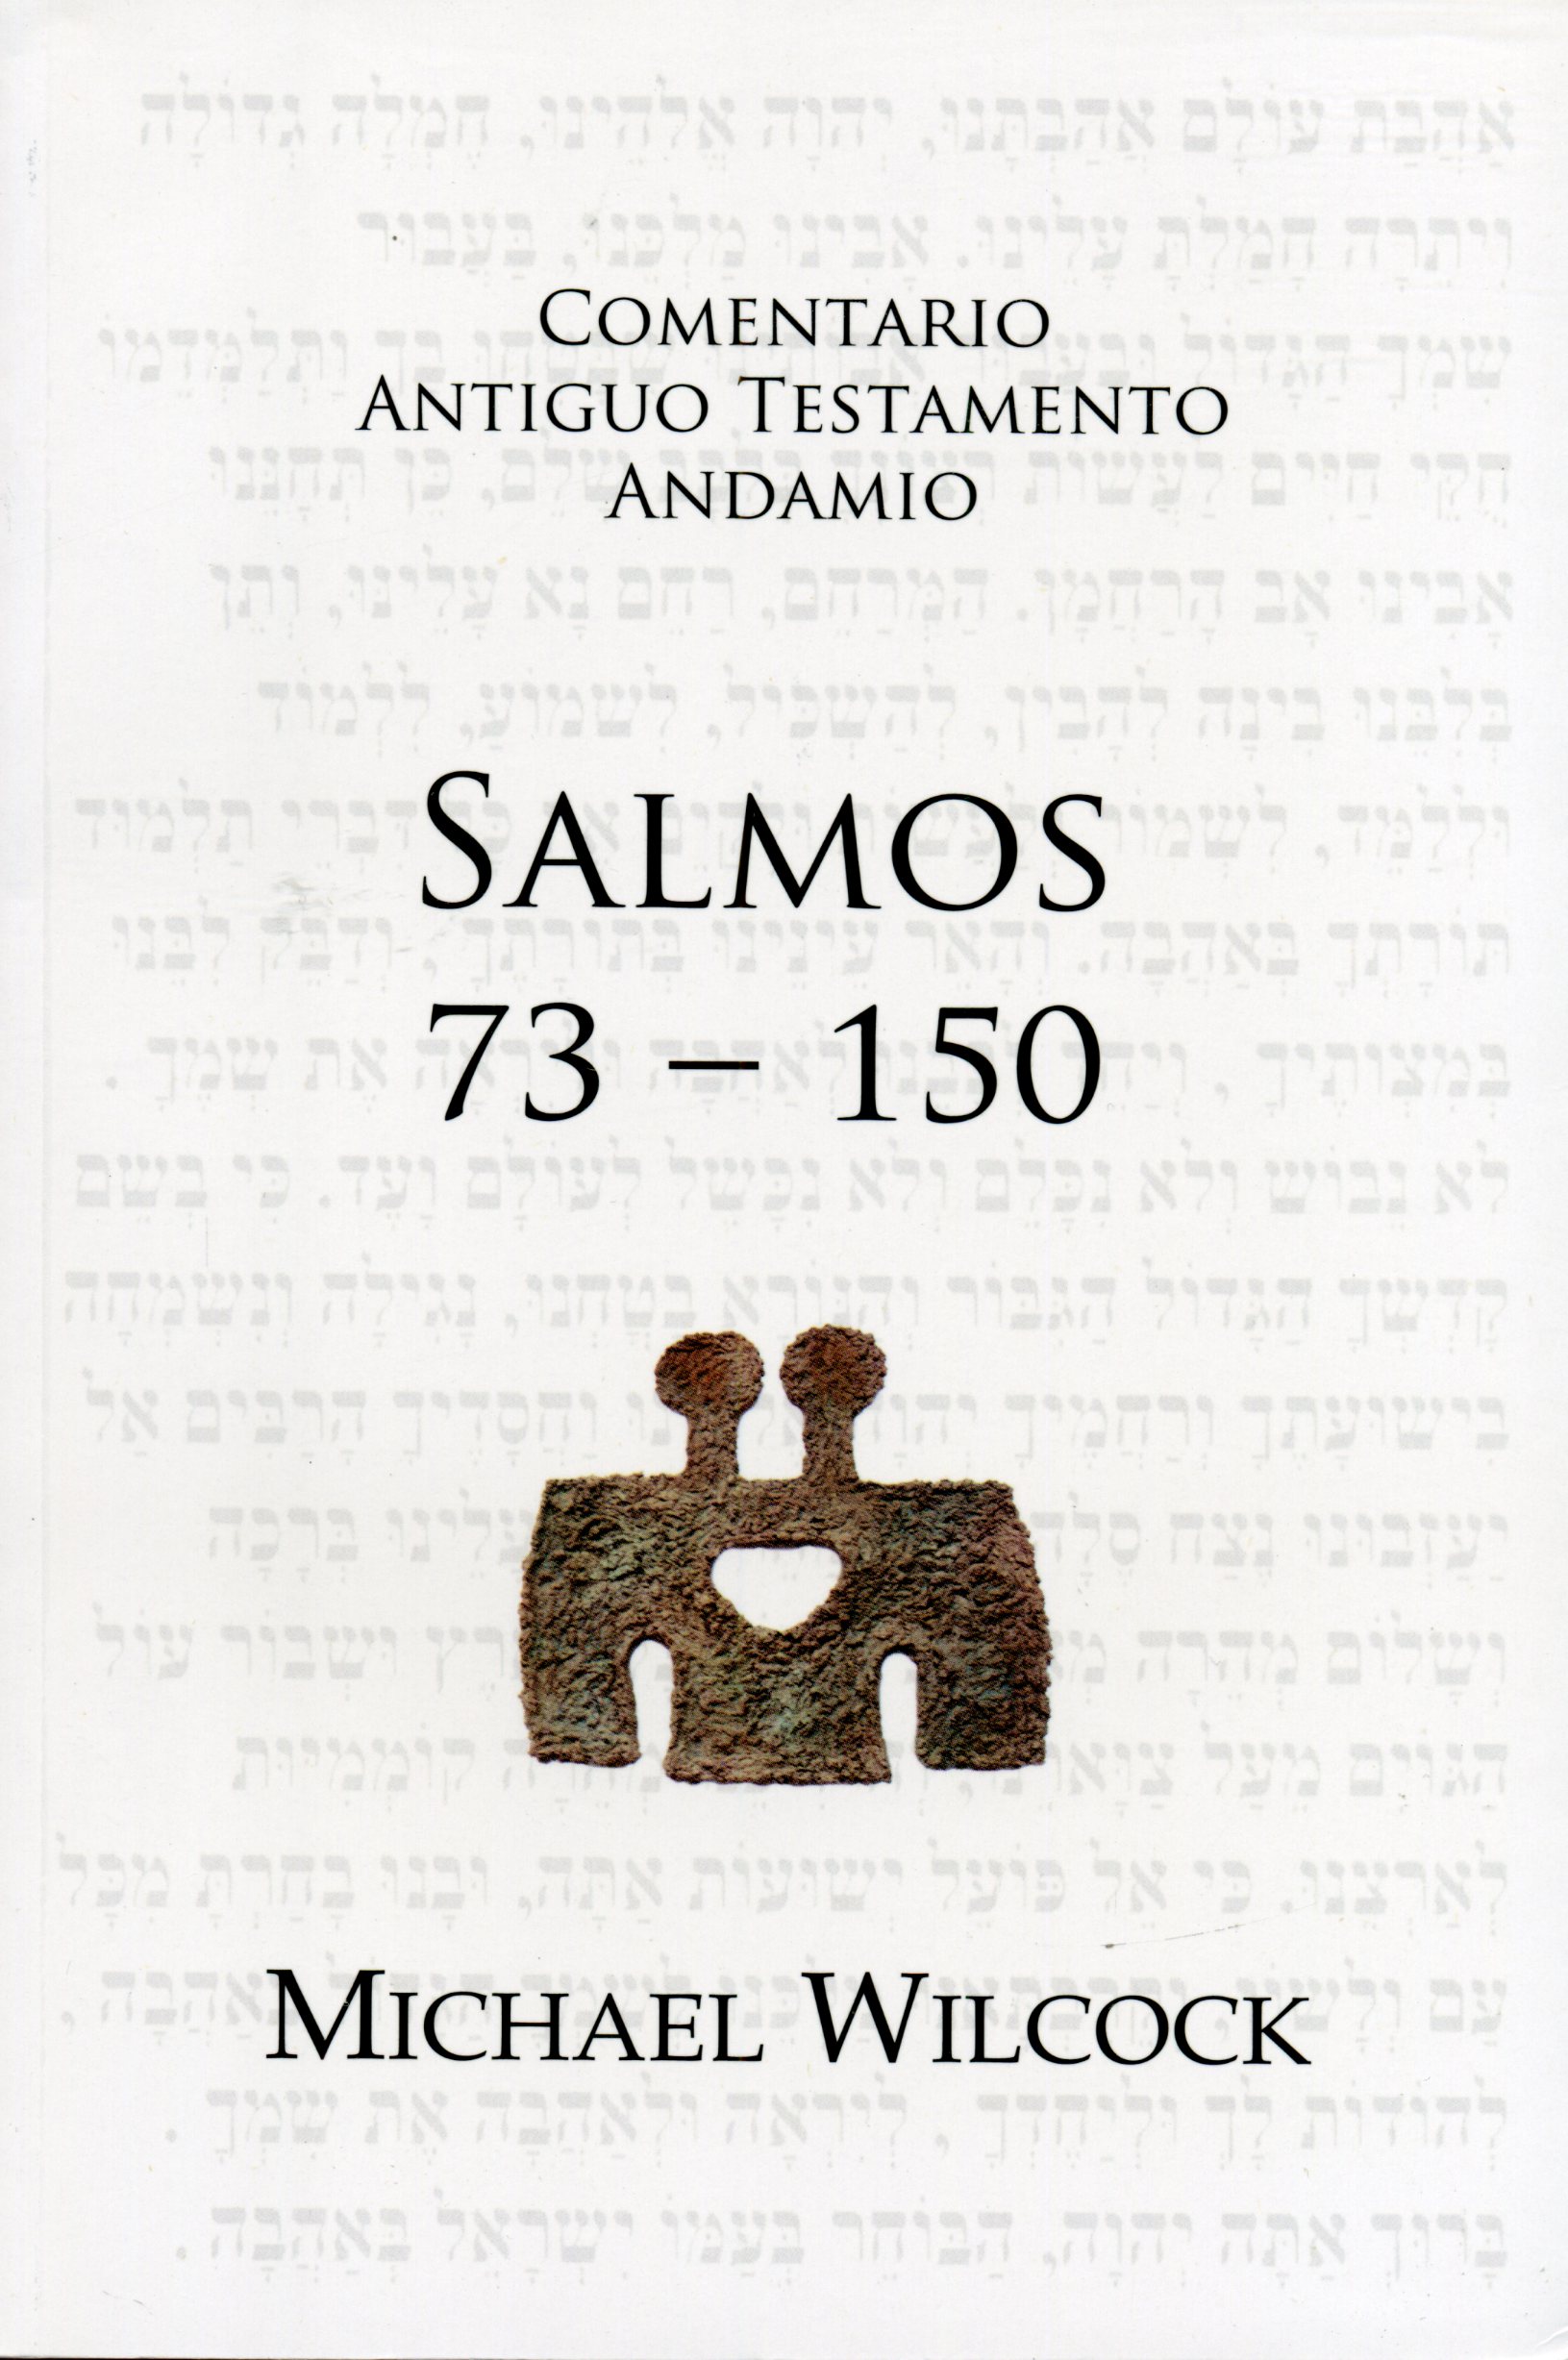 Comentario Antiguo Testamento Salmos 73 150 Andamio (9788415189305) CLC Colombia